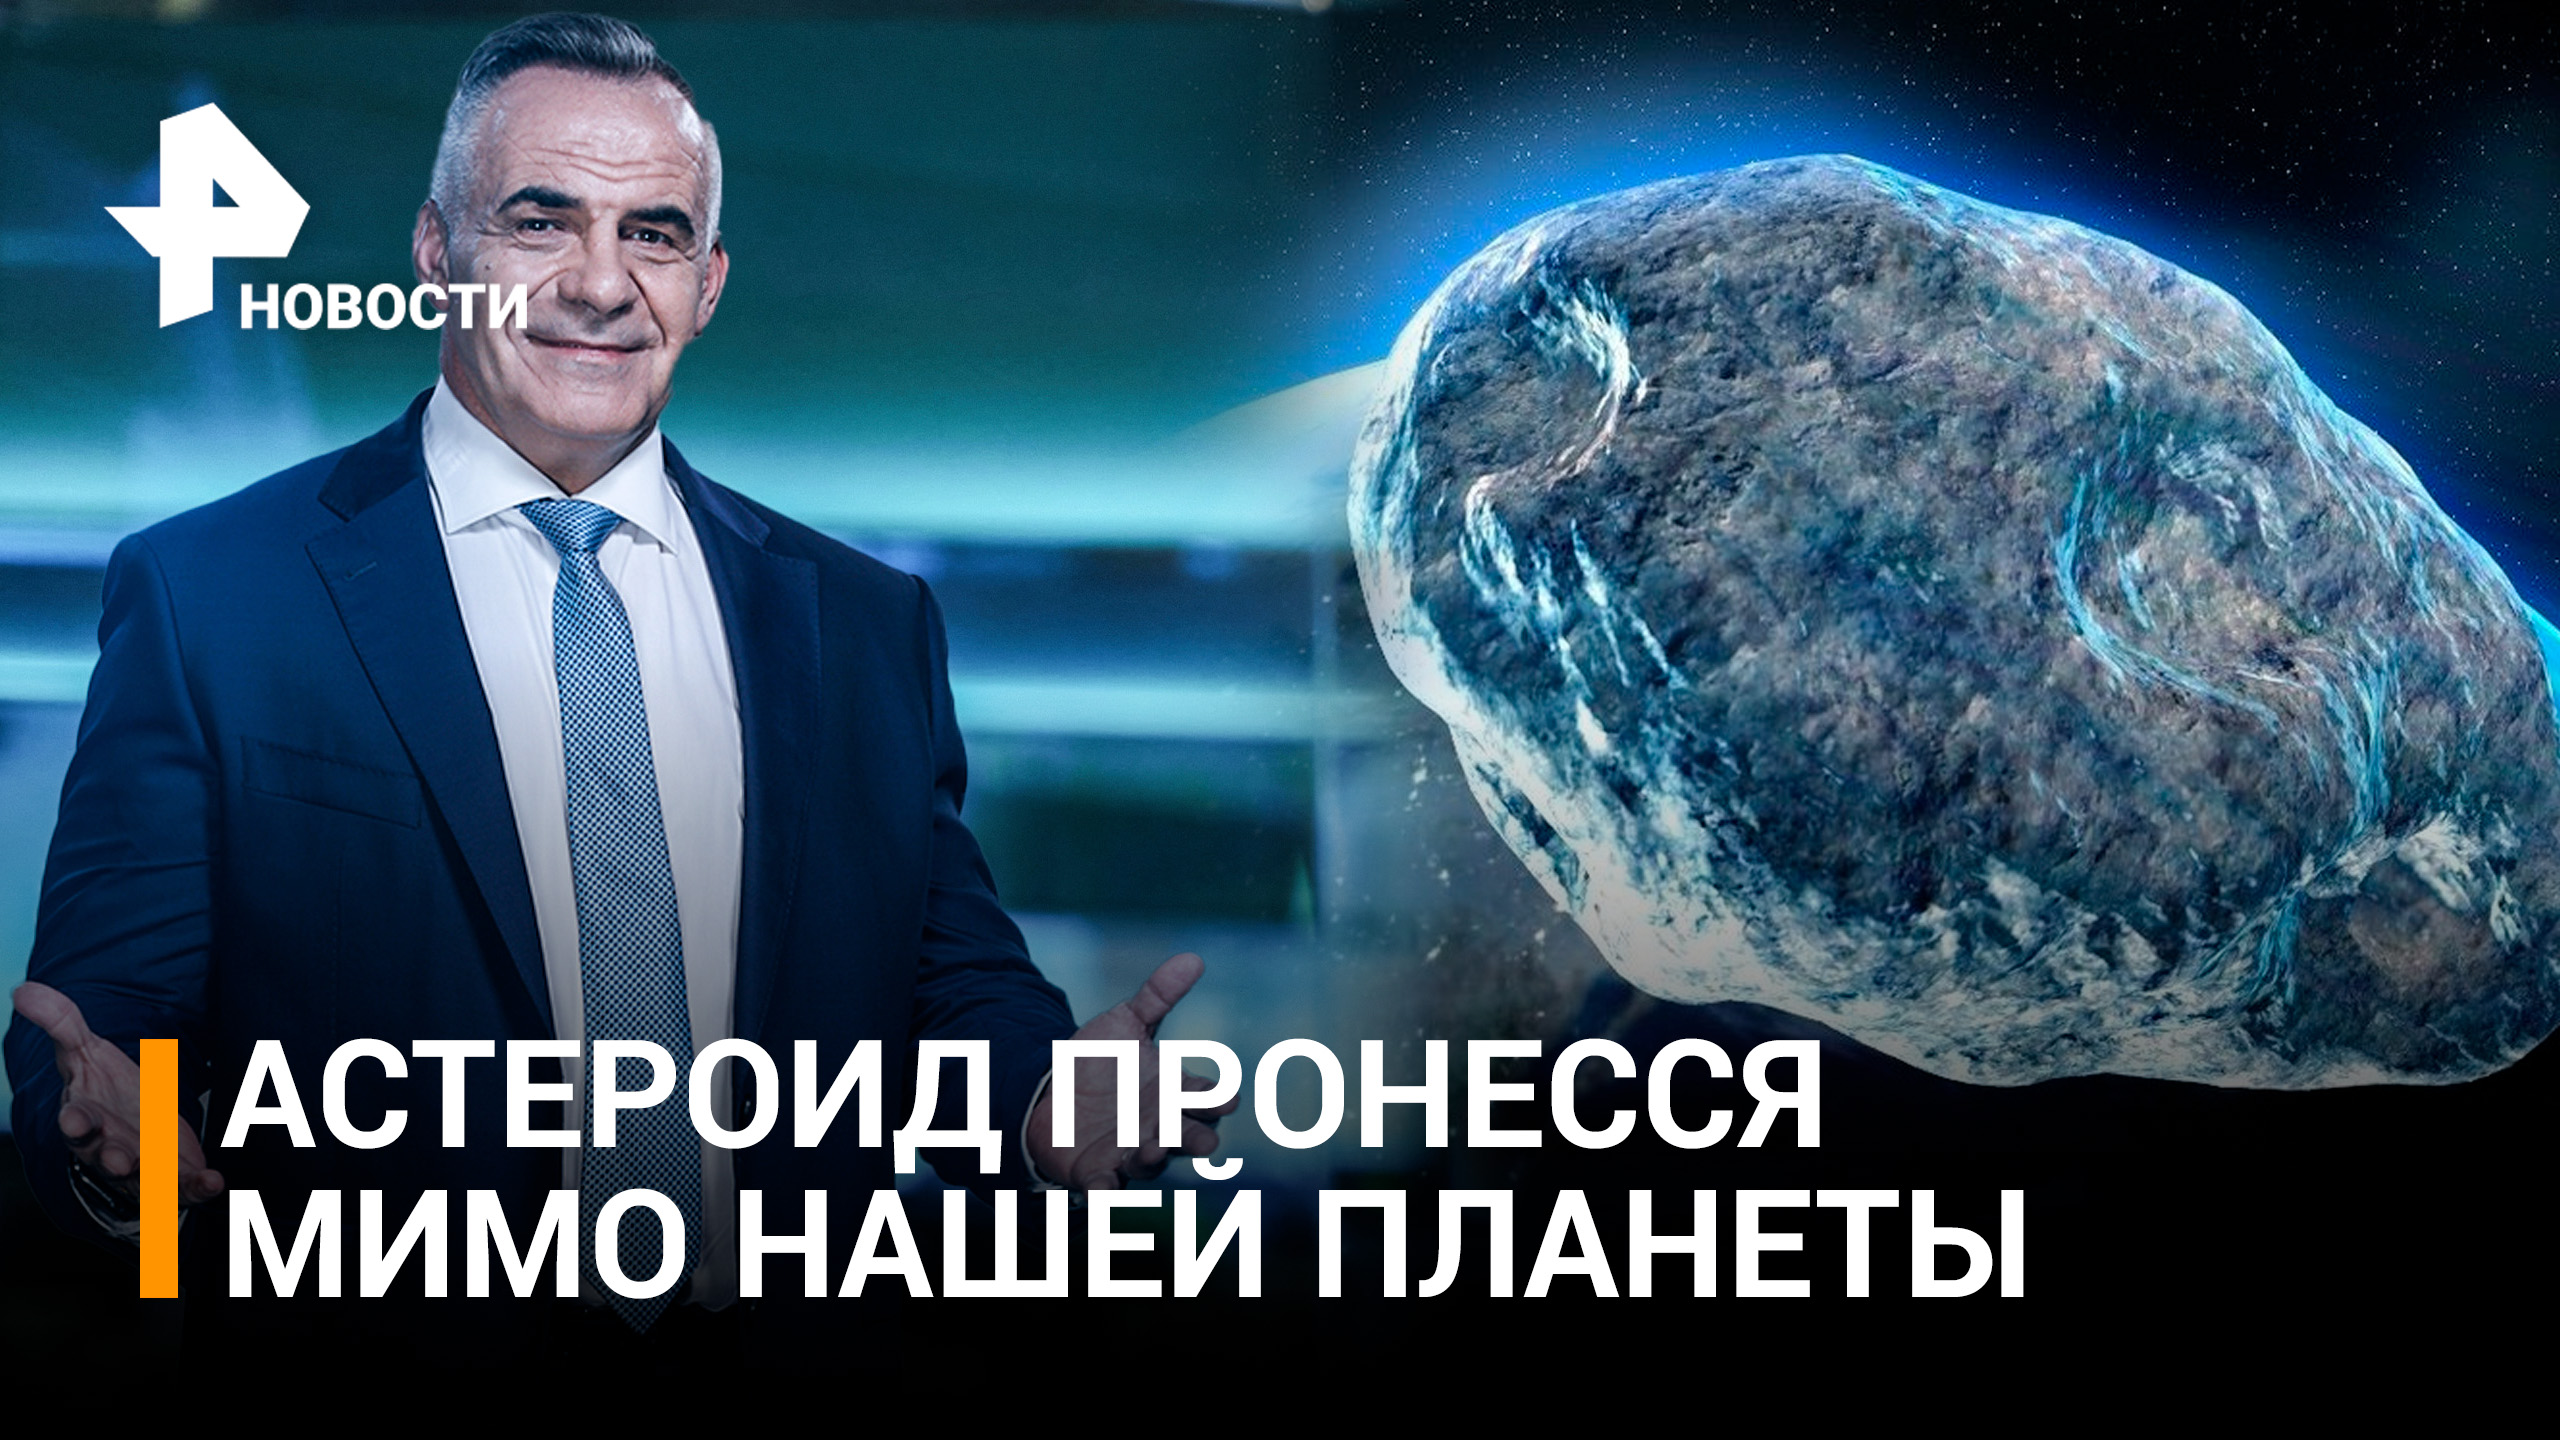 Крупный астероид приблизился к Земле на этой неделе / ИТОГИ с Петром Марченко